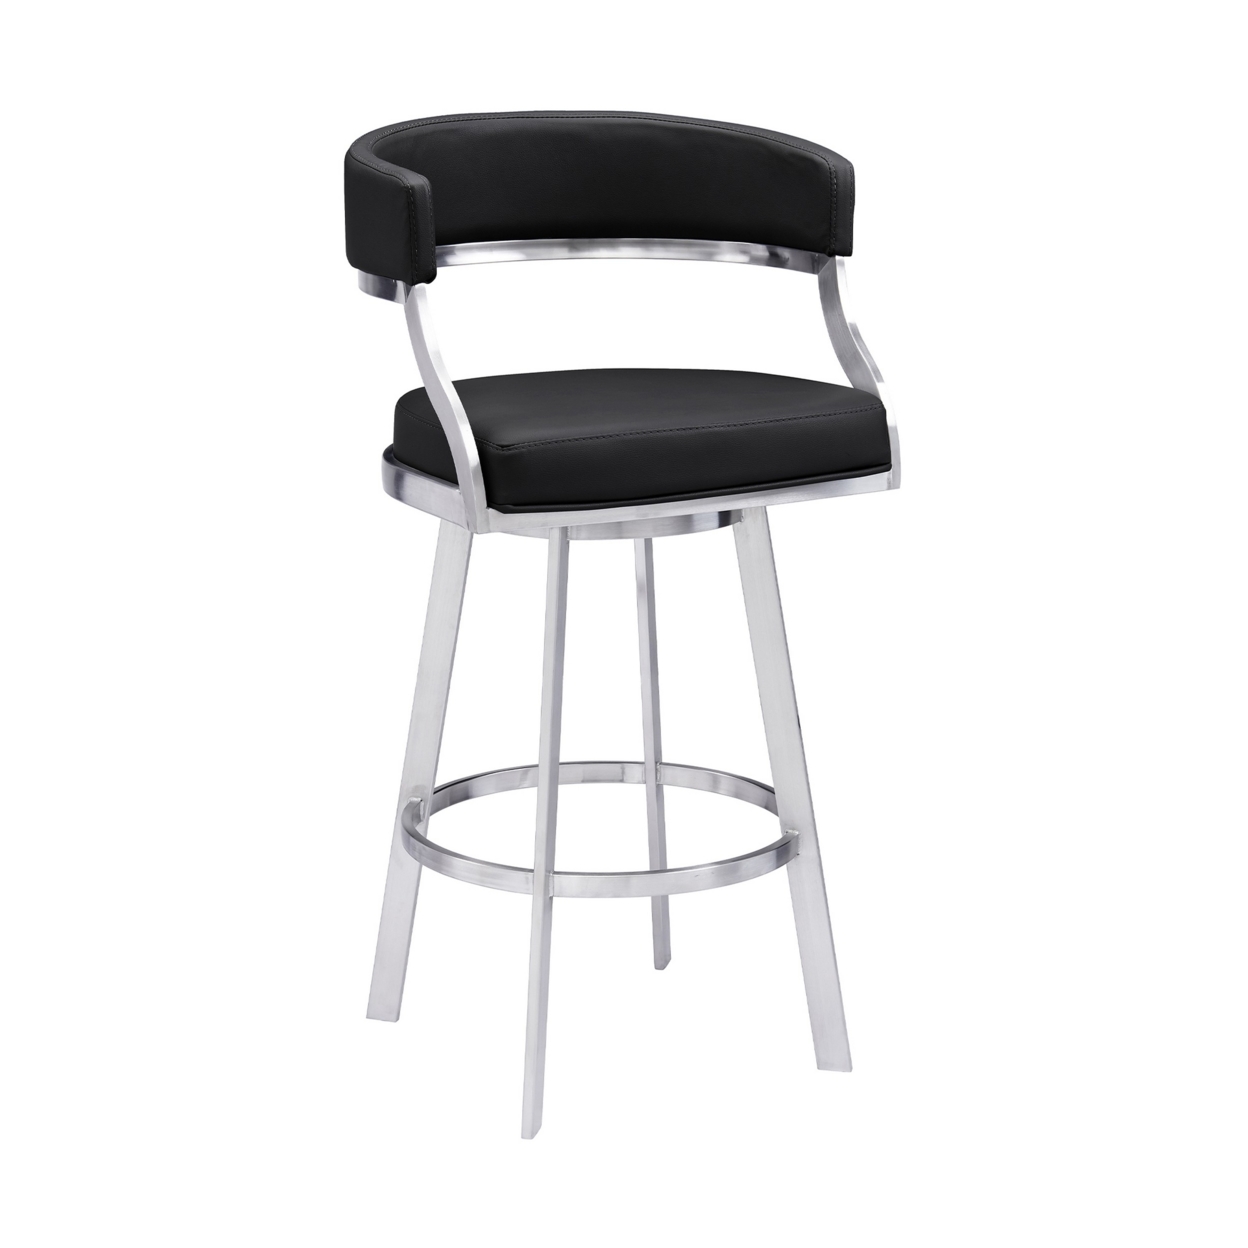 Ava 30 Inch Swivel Bar Stool Chair, Open Back, Steel, Black Faux Leather- Saltoro Sherpi